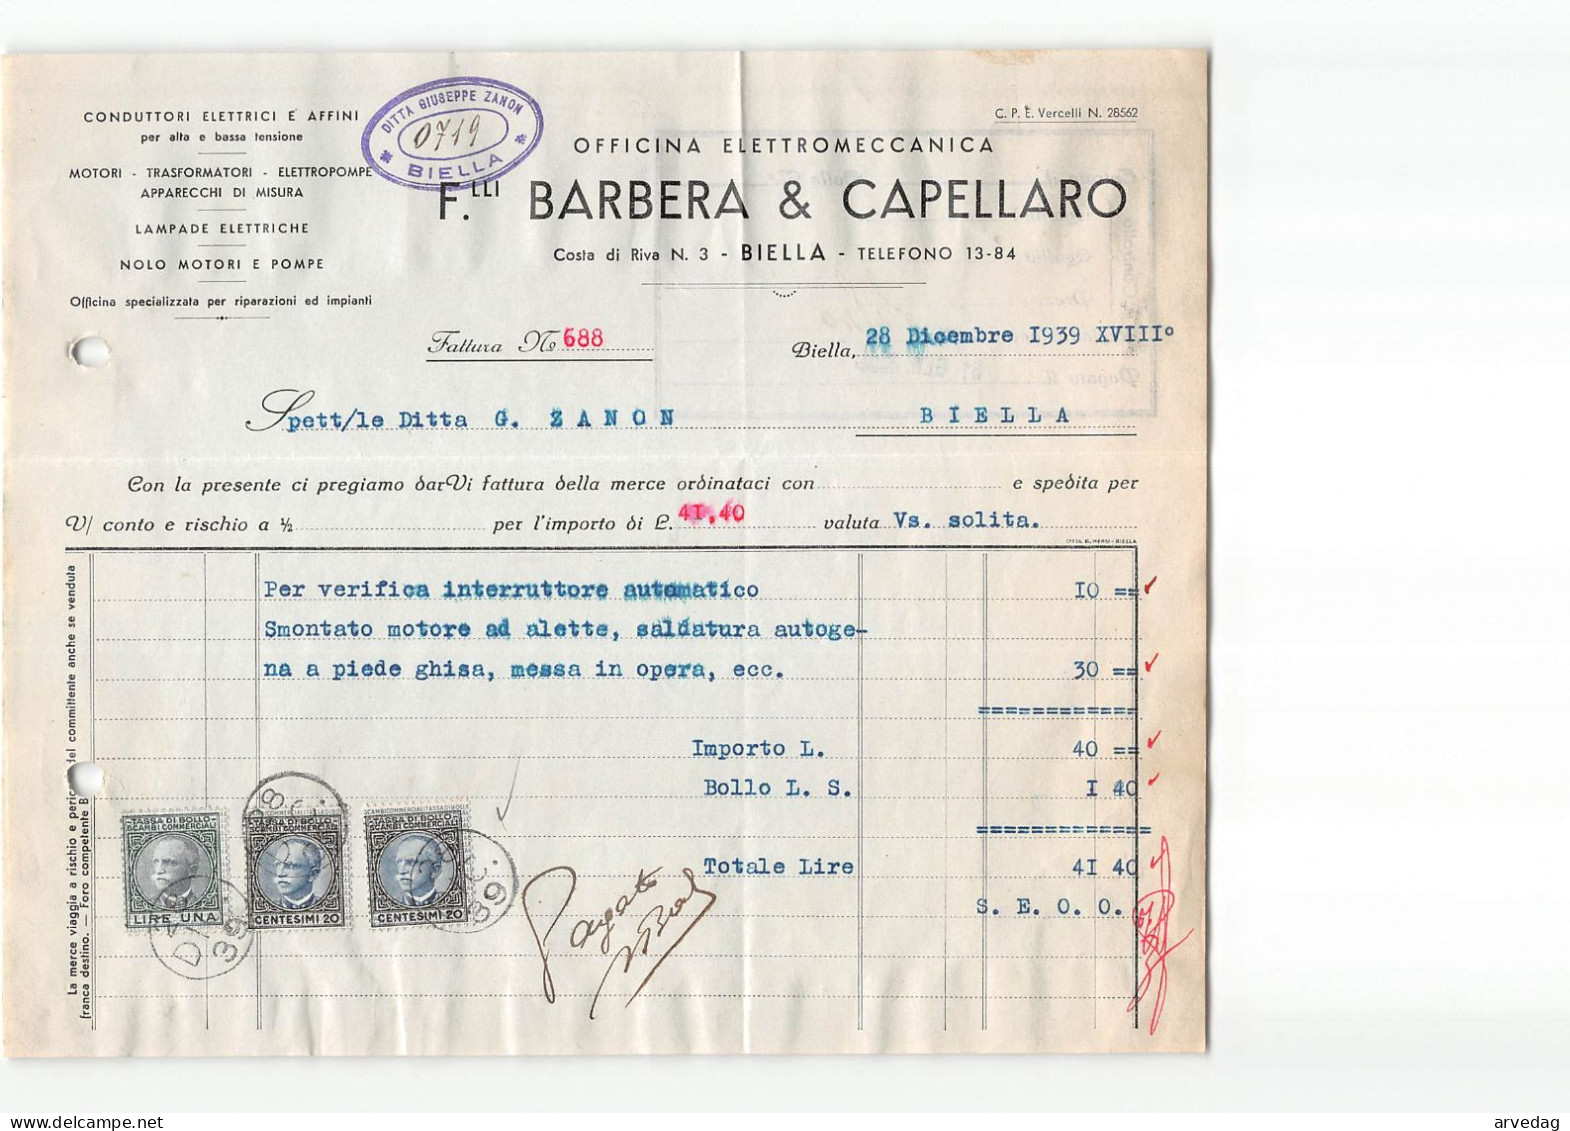 AG2607 BARBERA & CAPELLARO OFFICINA ELETTROMECCANICA - FATTURA - Italia